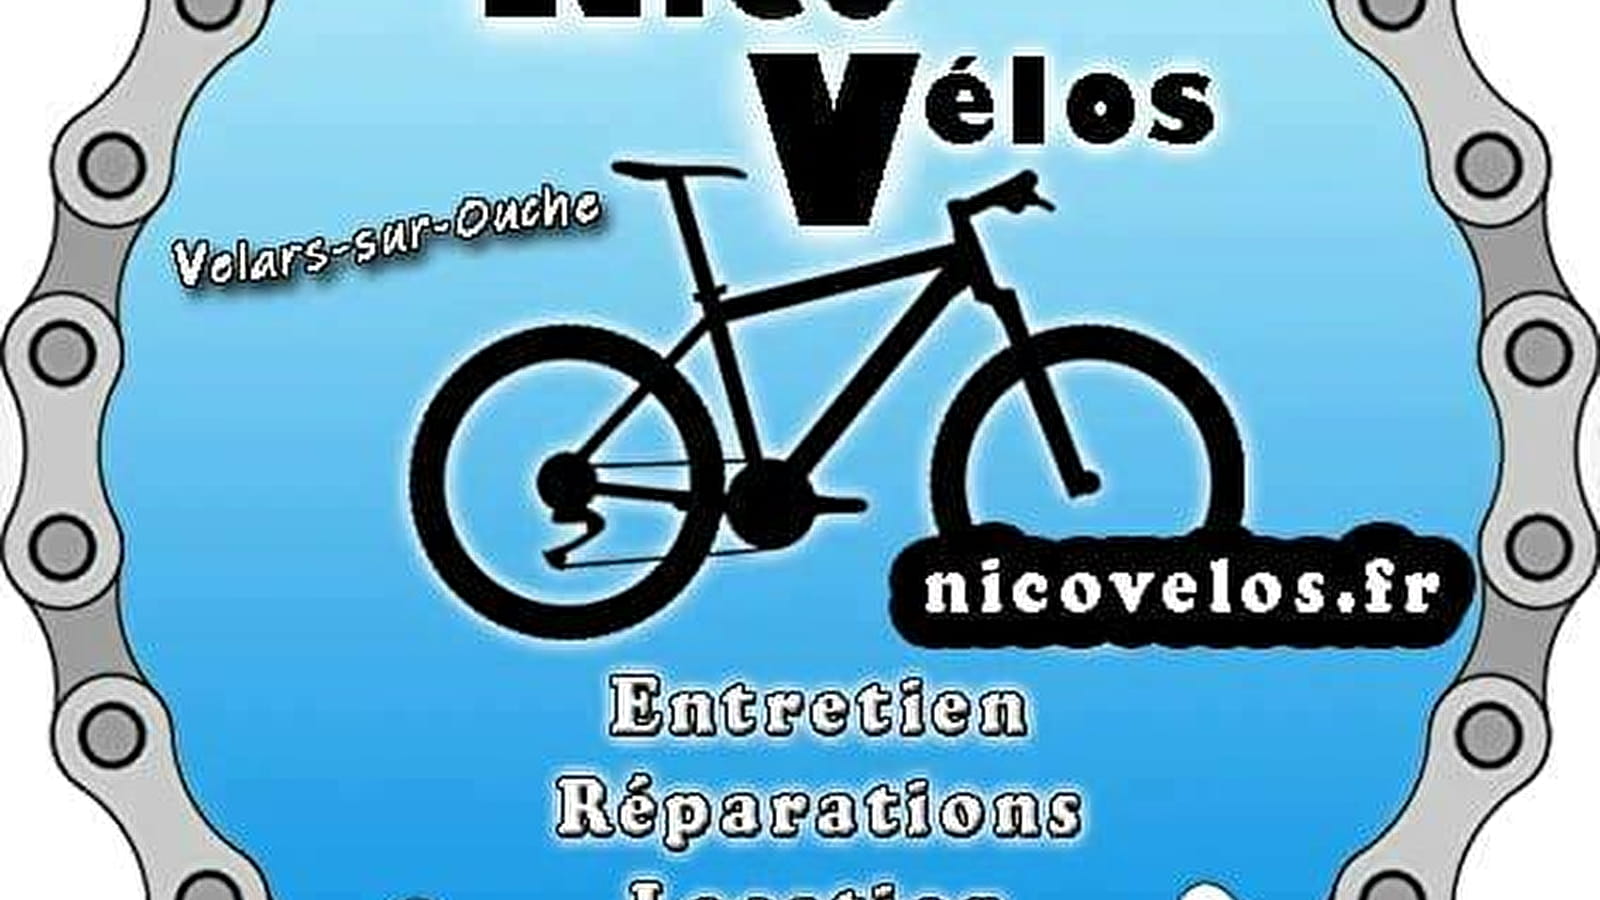 Nico Vélos - Réparation entretien de vélos - Vente de vélos et accessoires - Electrification de vélos - Location de vélos